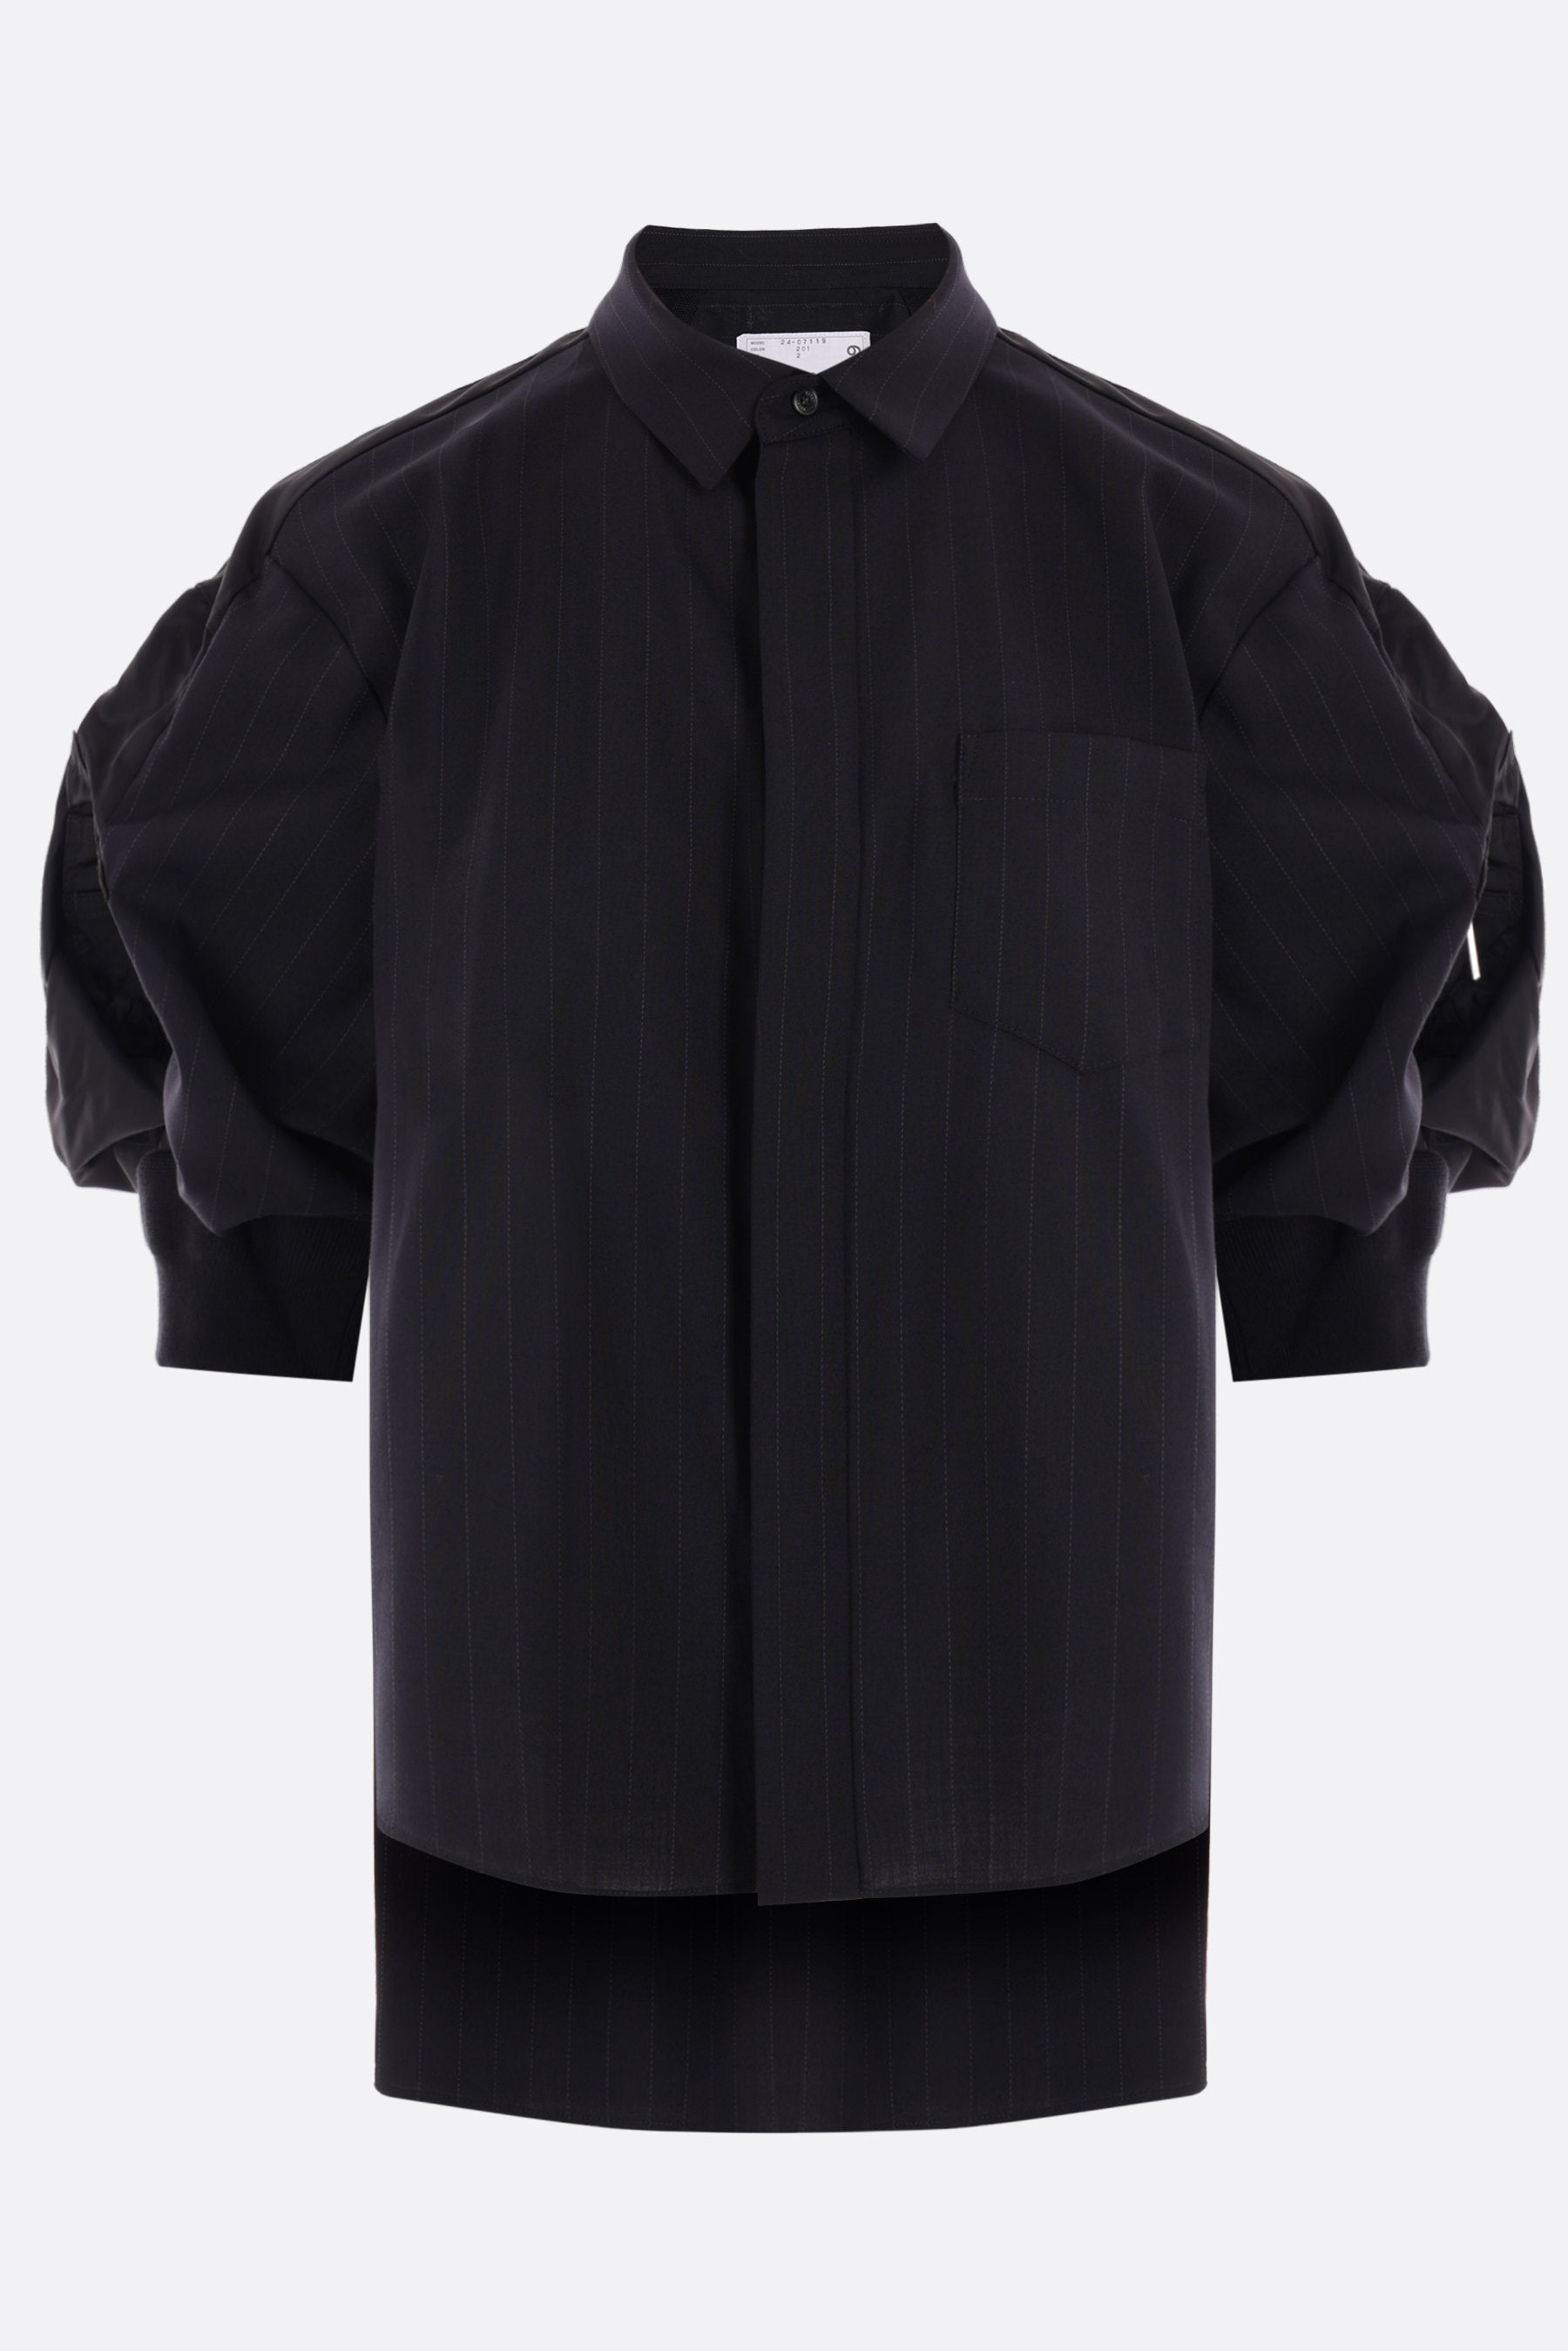 pinstriped wool blend short-sleeved shirt